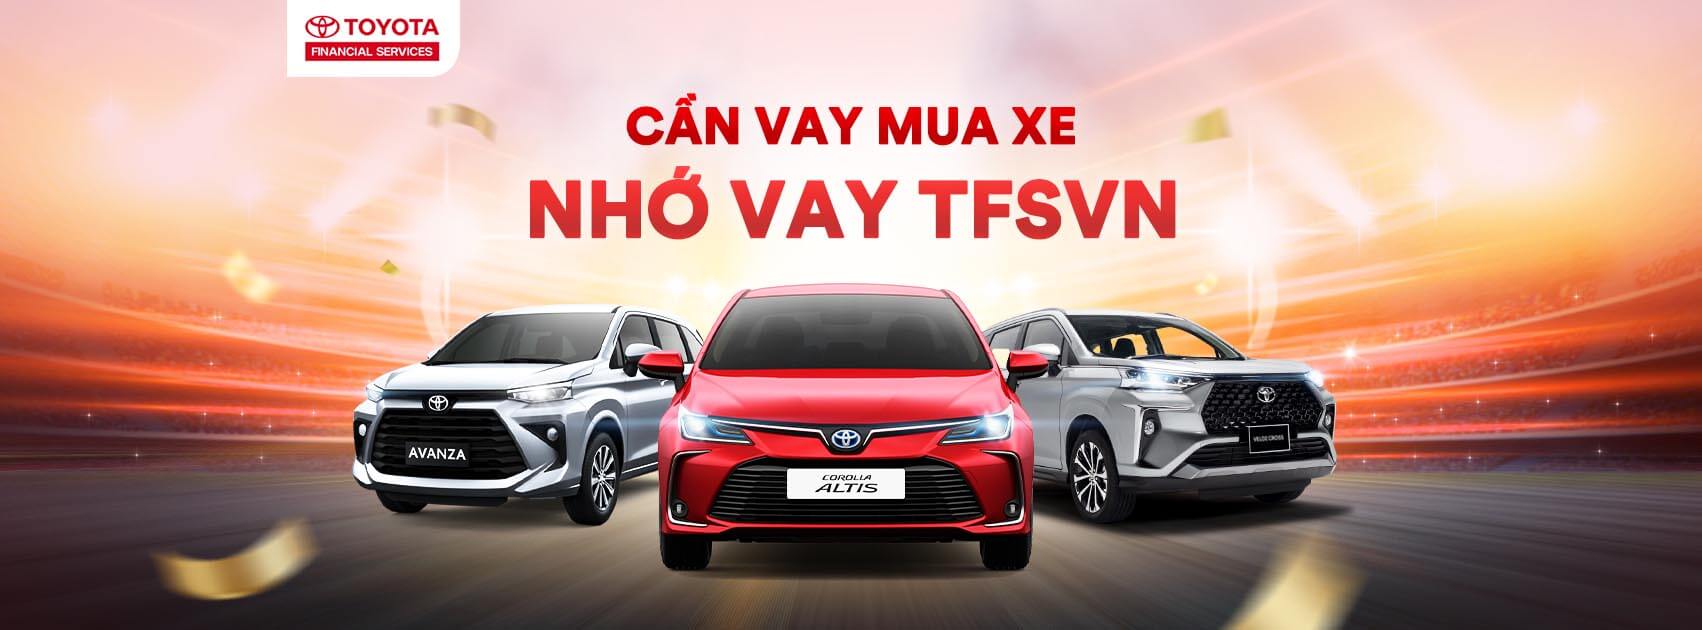 Lưu ý cần biết khi vay mua ô tô Toyota trả góp tại TFSVN